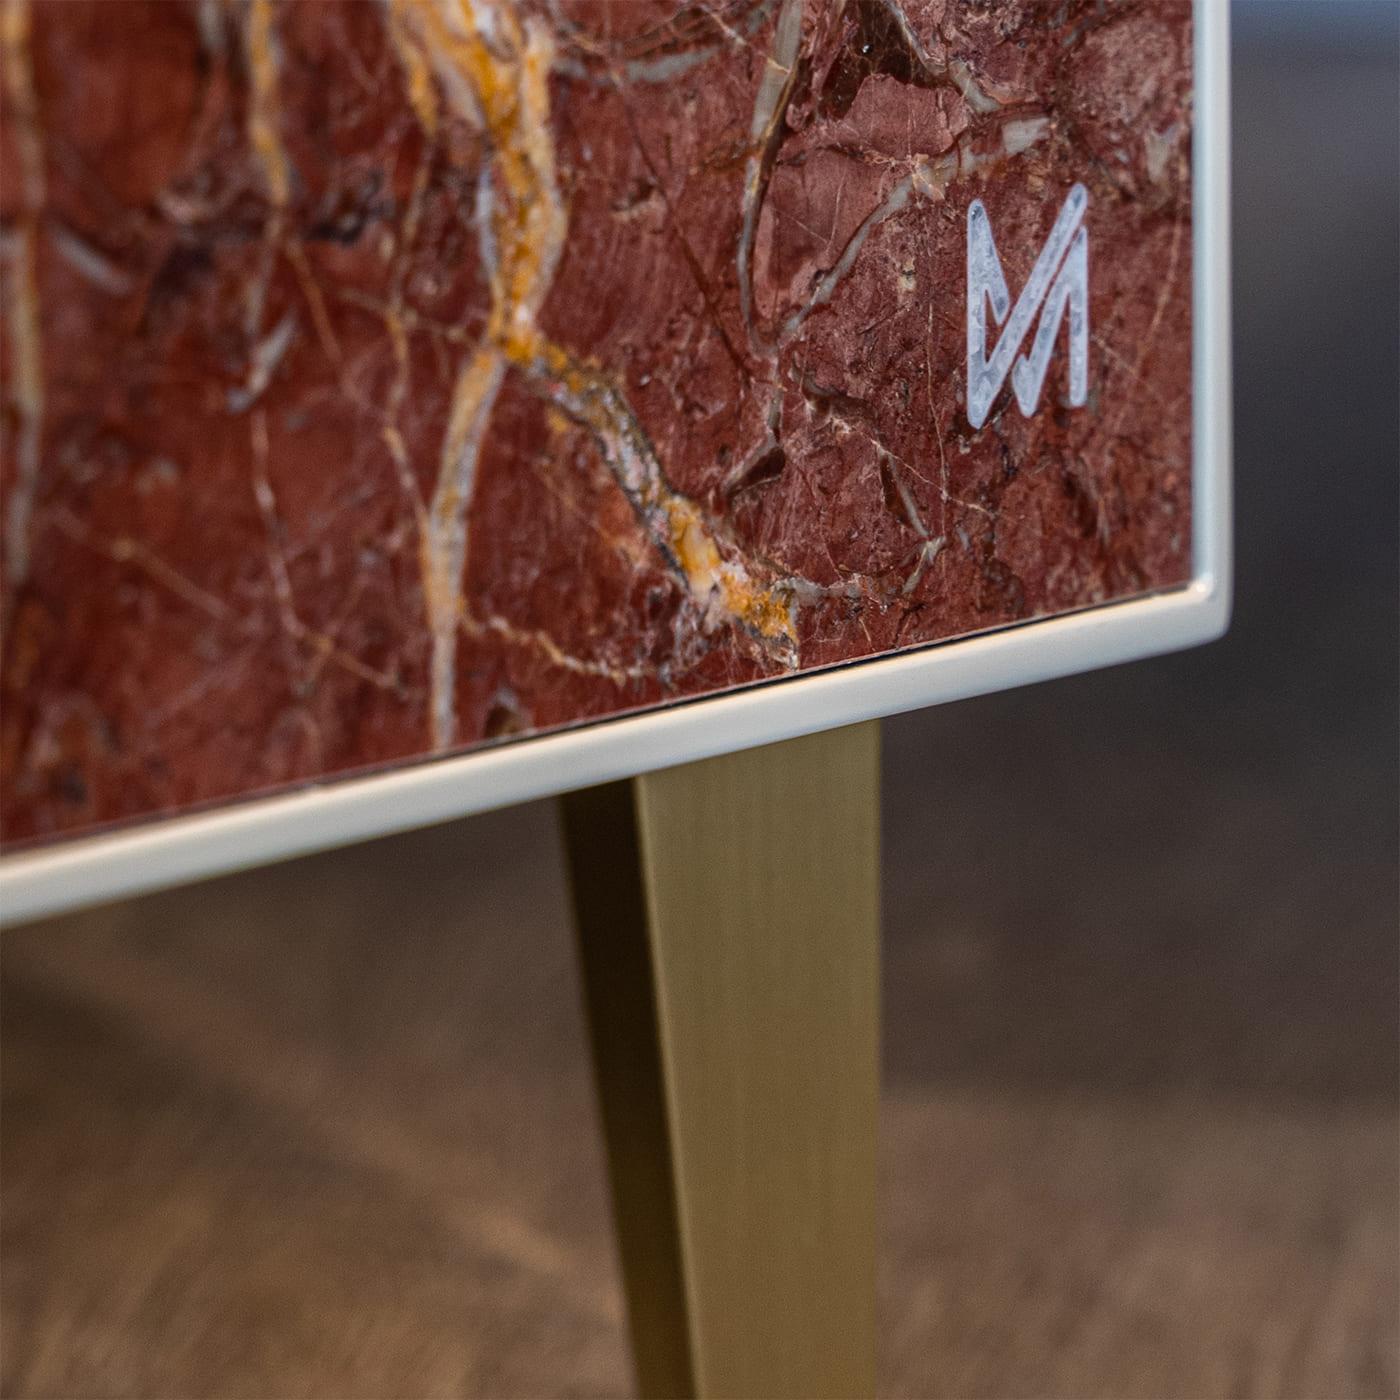 Als Teil der Marmo Collection von Marzia Boaglio setzt der Schrank Esplosione mit seinem schillernden abstrakten Design in Rosatönen einen dynamischen Akzent in einem anspruchsvollen modernen Interieur. Mit meisterhaft gearbeiteten